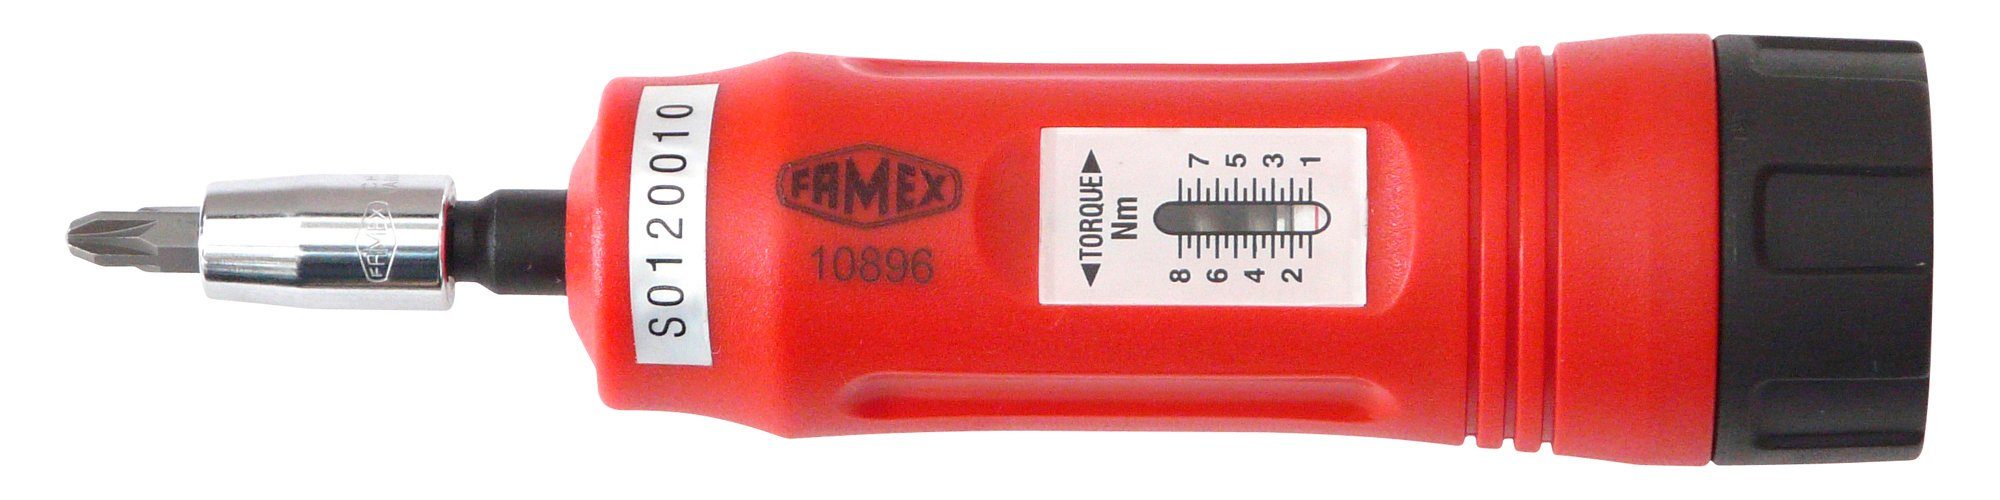 1-8 FAMEX Nm Drehmomentschlüssel 10896,